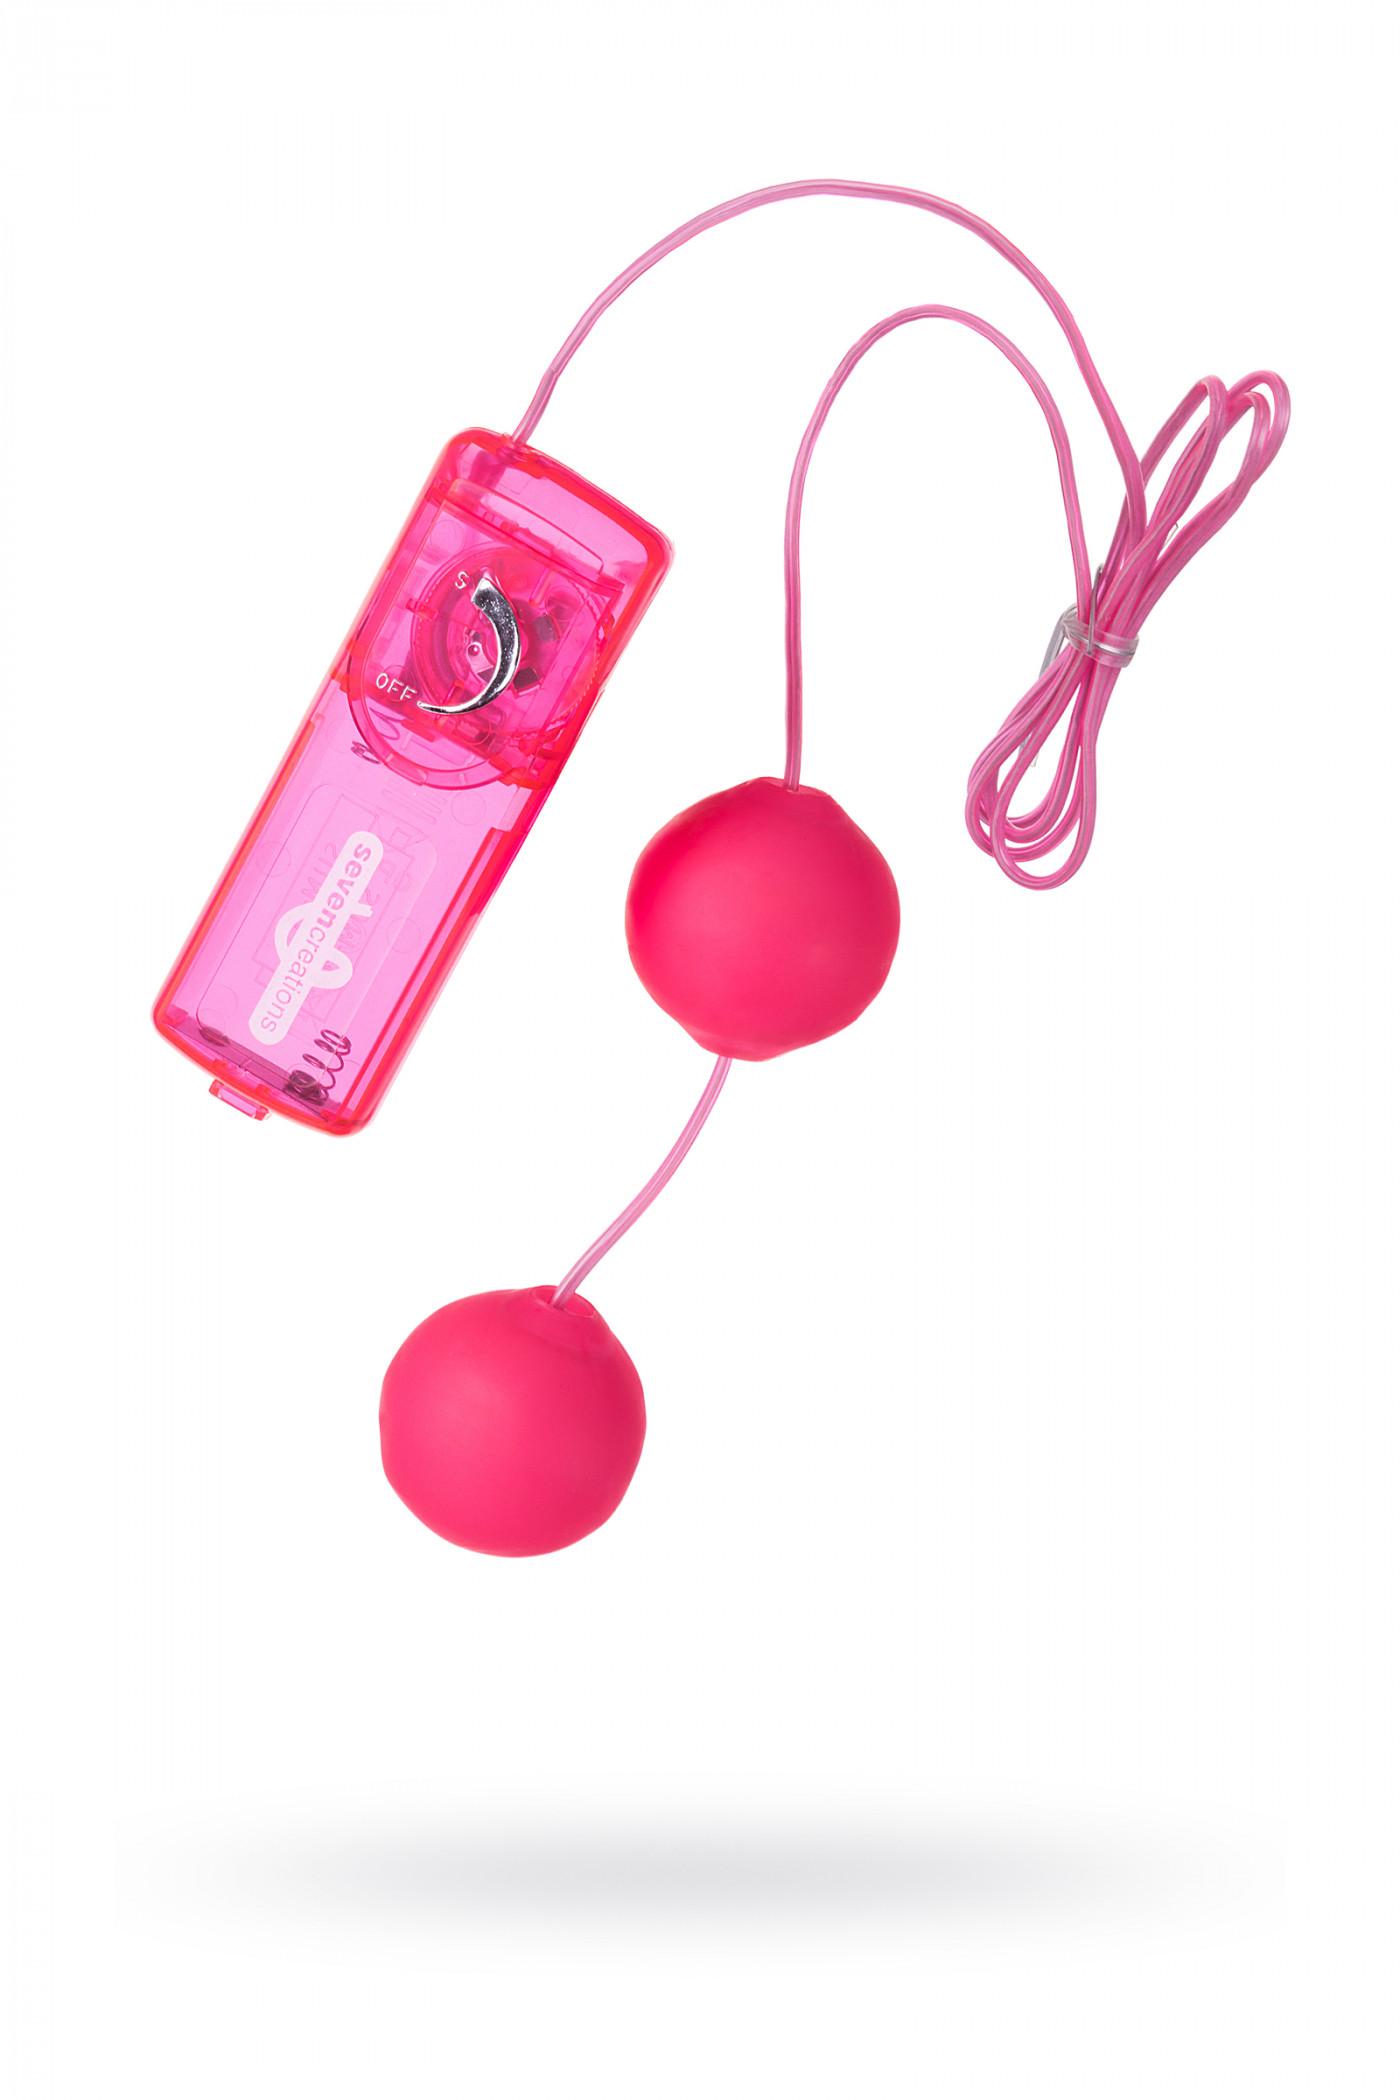 Вагинальные шарики Dream Toysс, TPE+ABS пластик, розовые, 3,6 см. Vestalshop.ru - Изображение 1